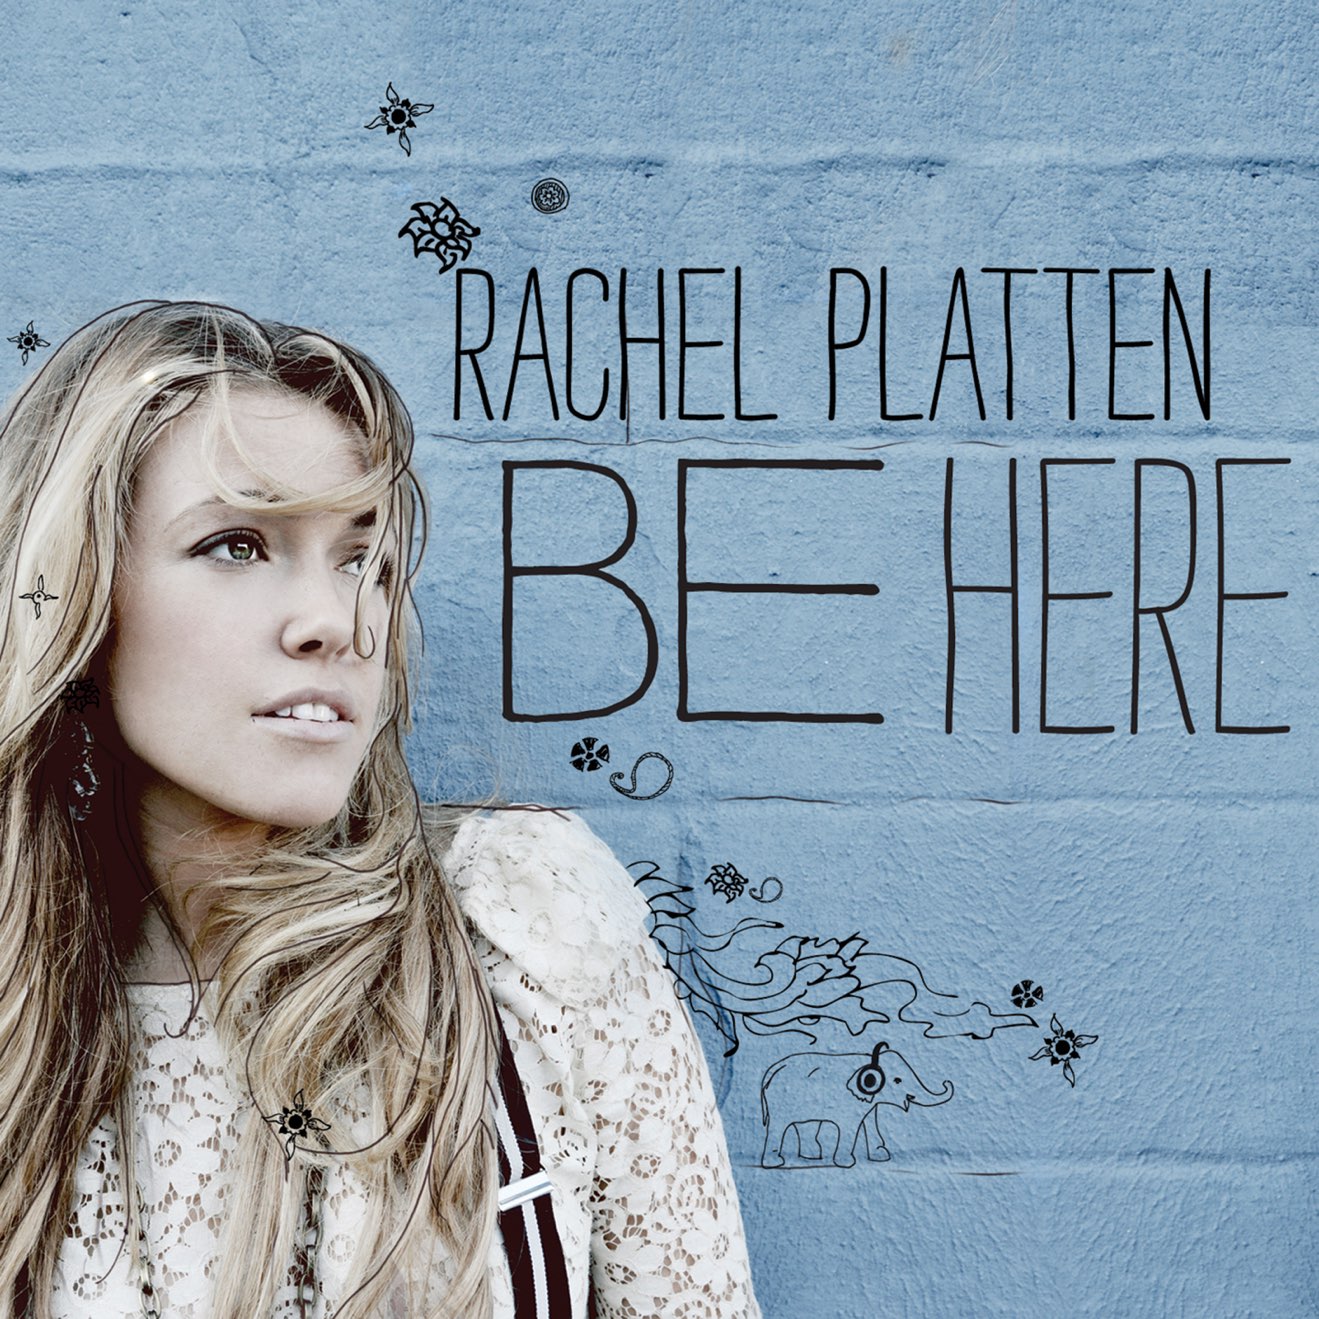 Rachel Platten – Be Here (2011) [iTunes Match M4A]